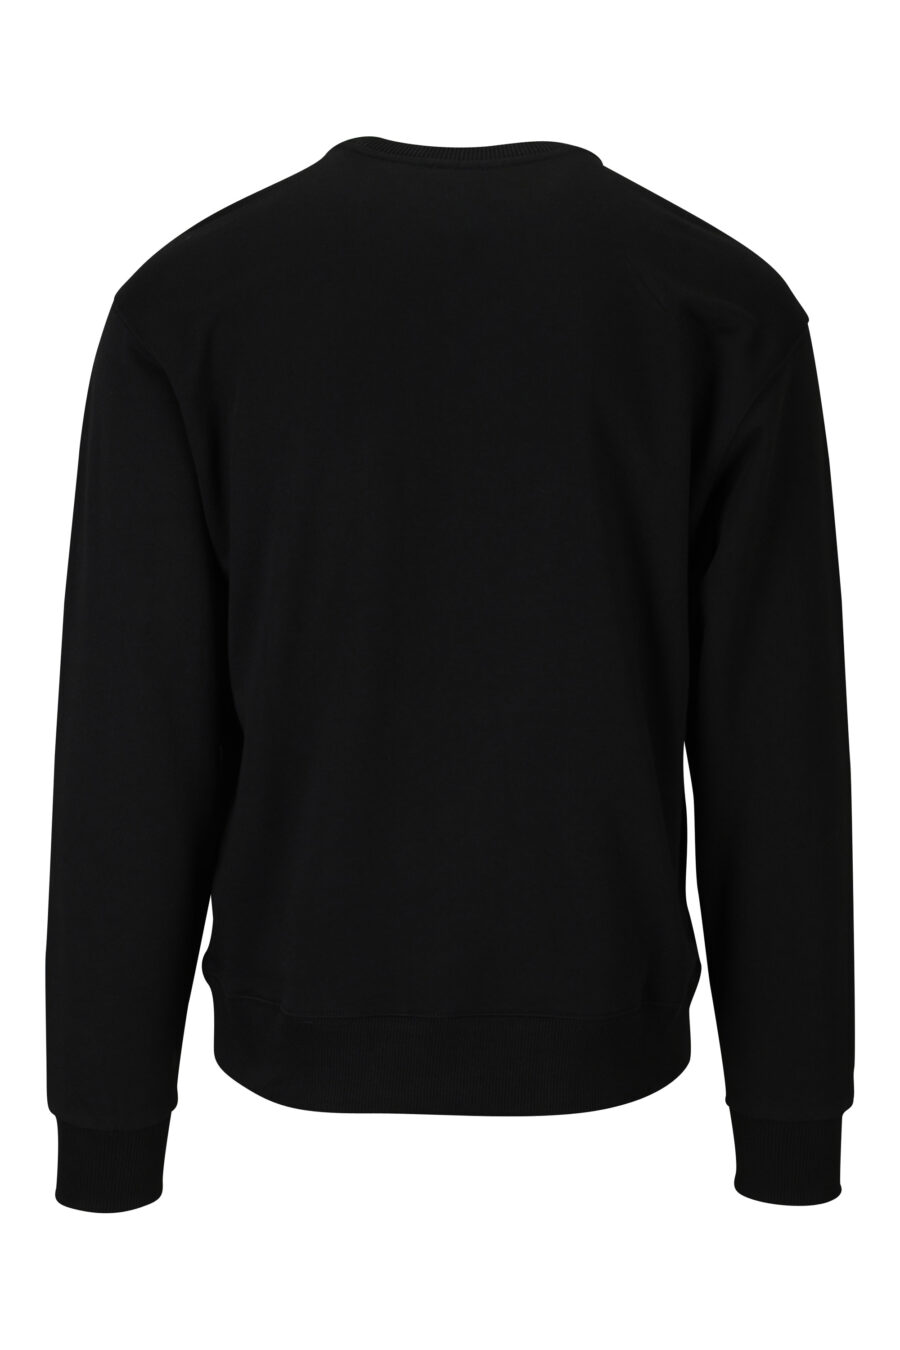 Schwarzes Sweatshirt mit Mini-Logo "boke flower" - 3612230469143 1